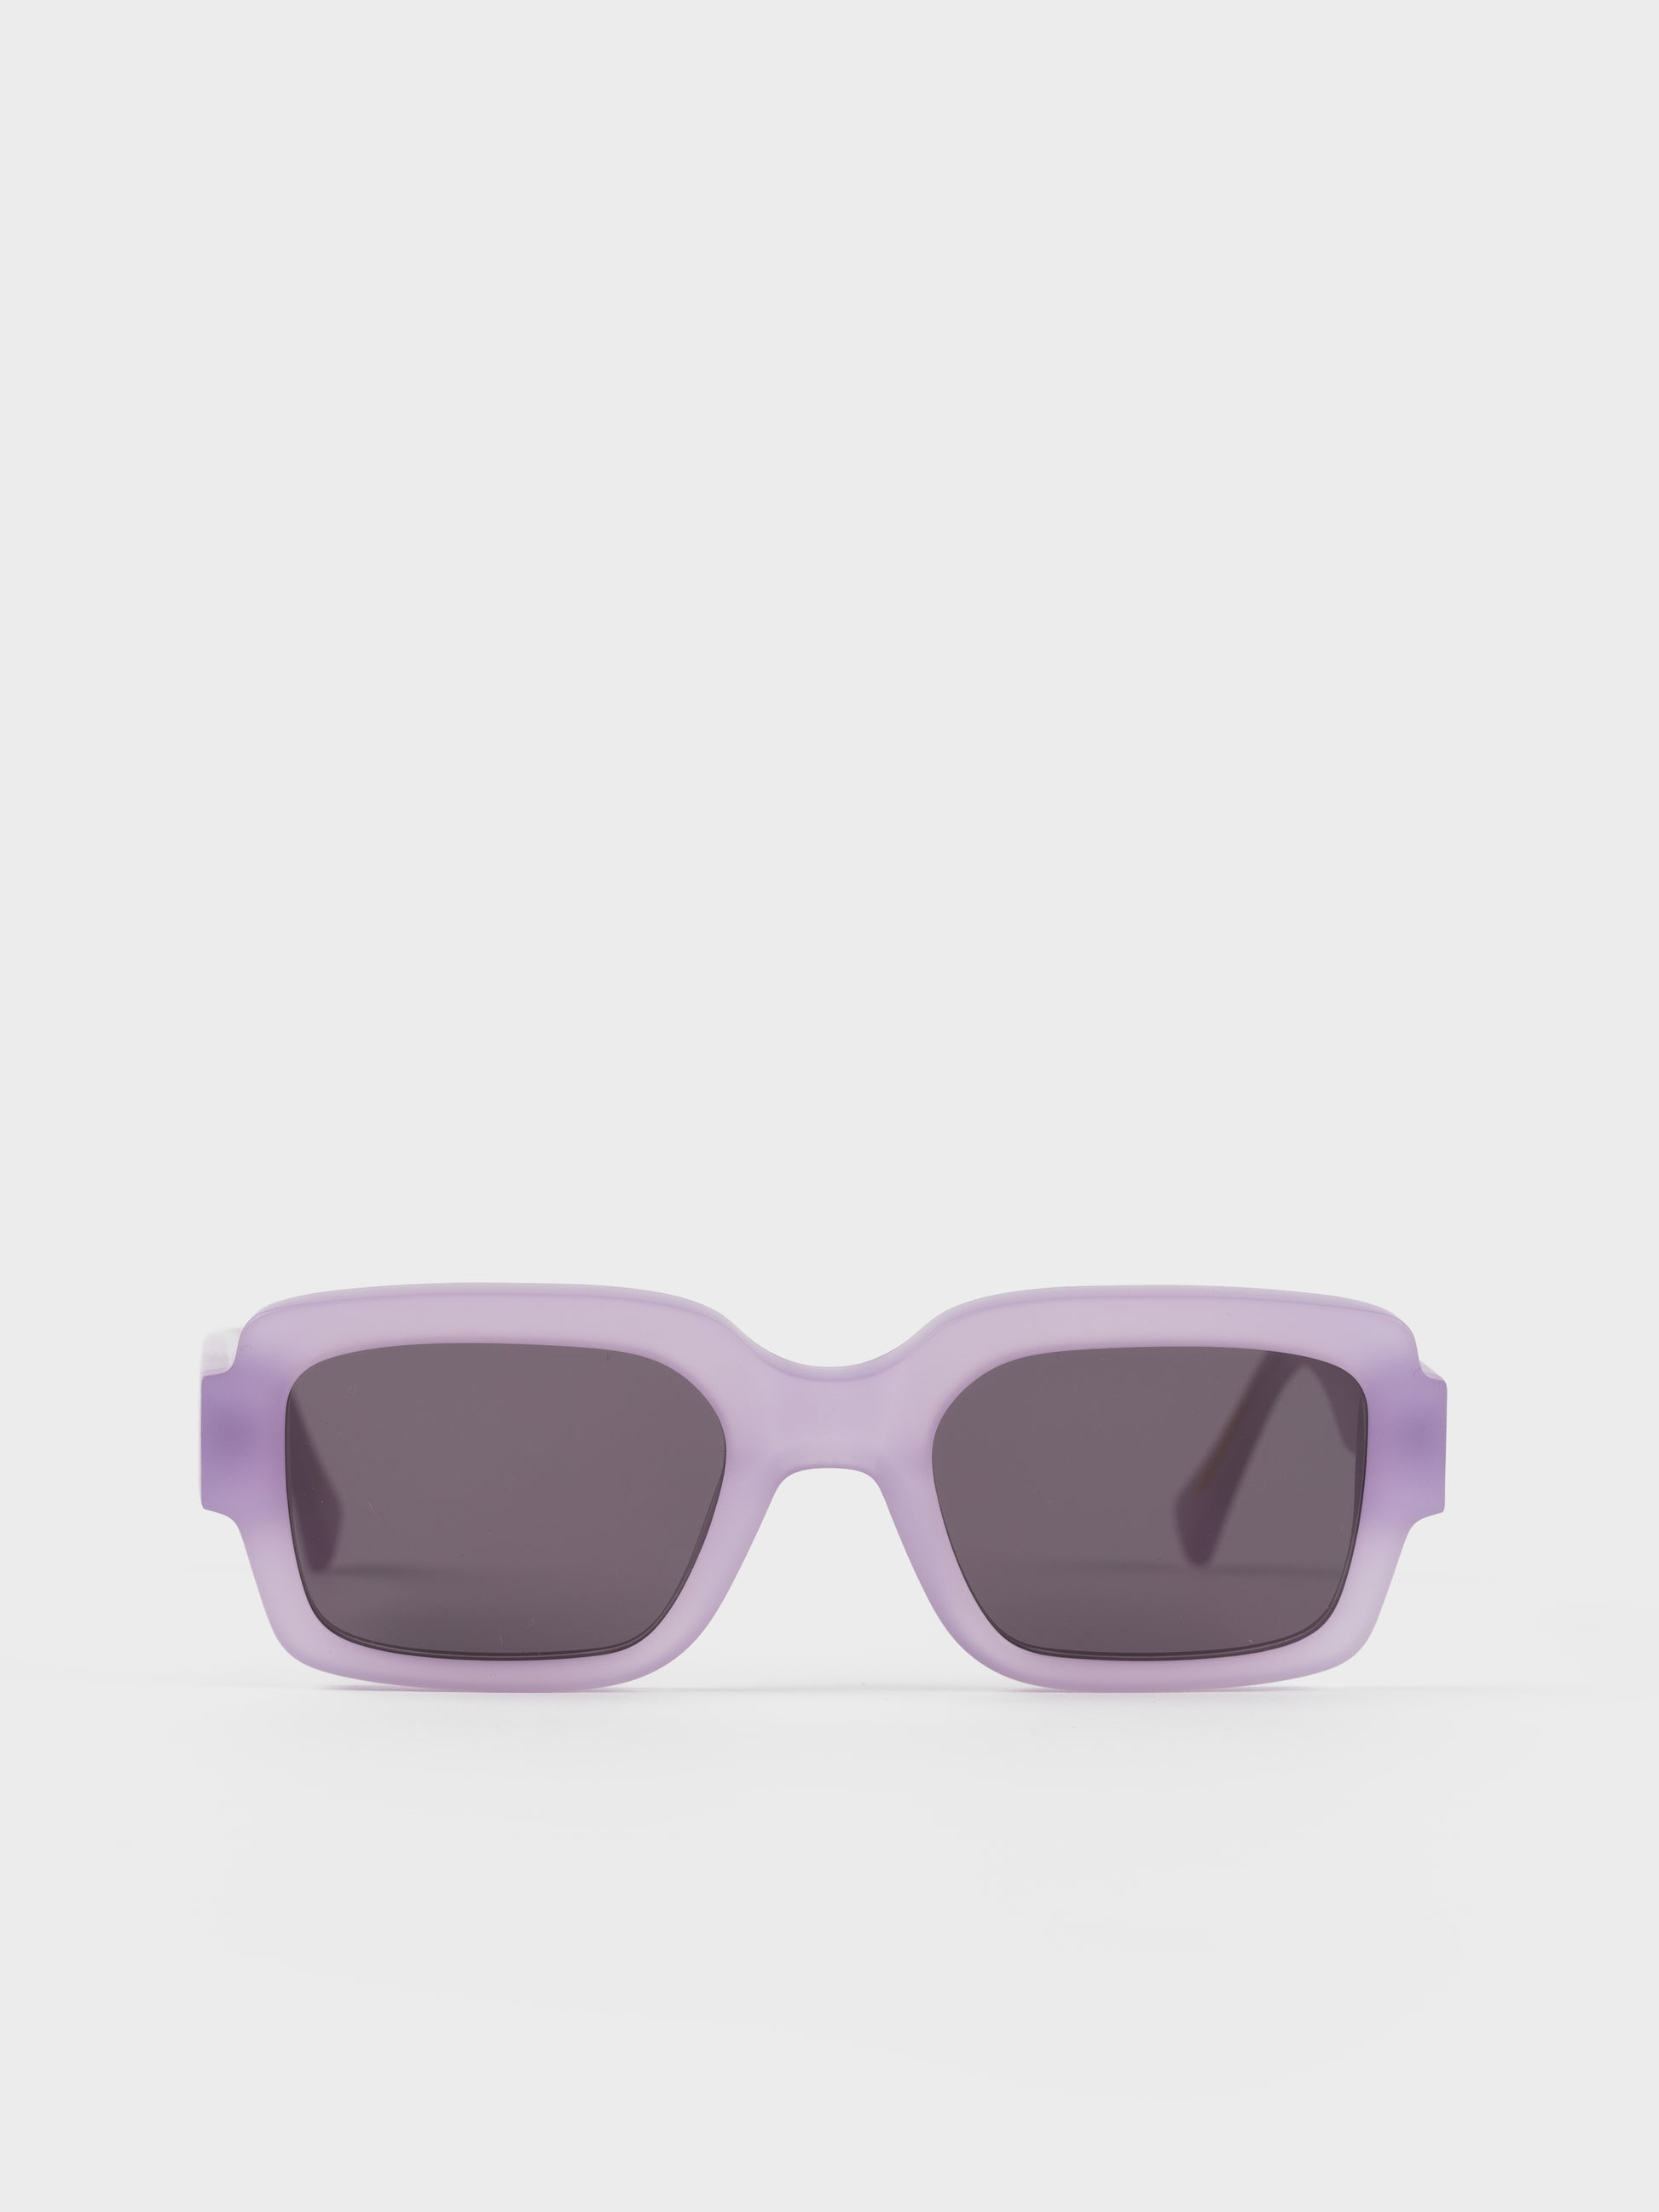 Monokel Sunglasses - Apollo Matt Lilac/Grey Lens